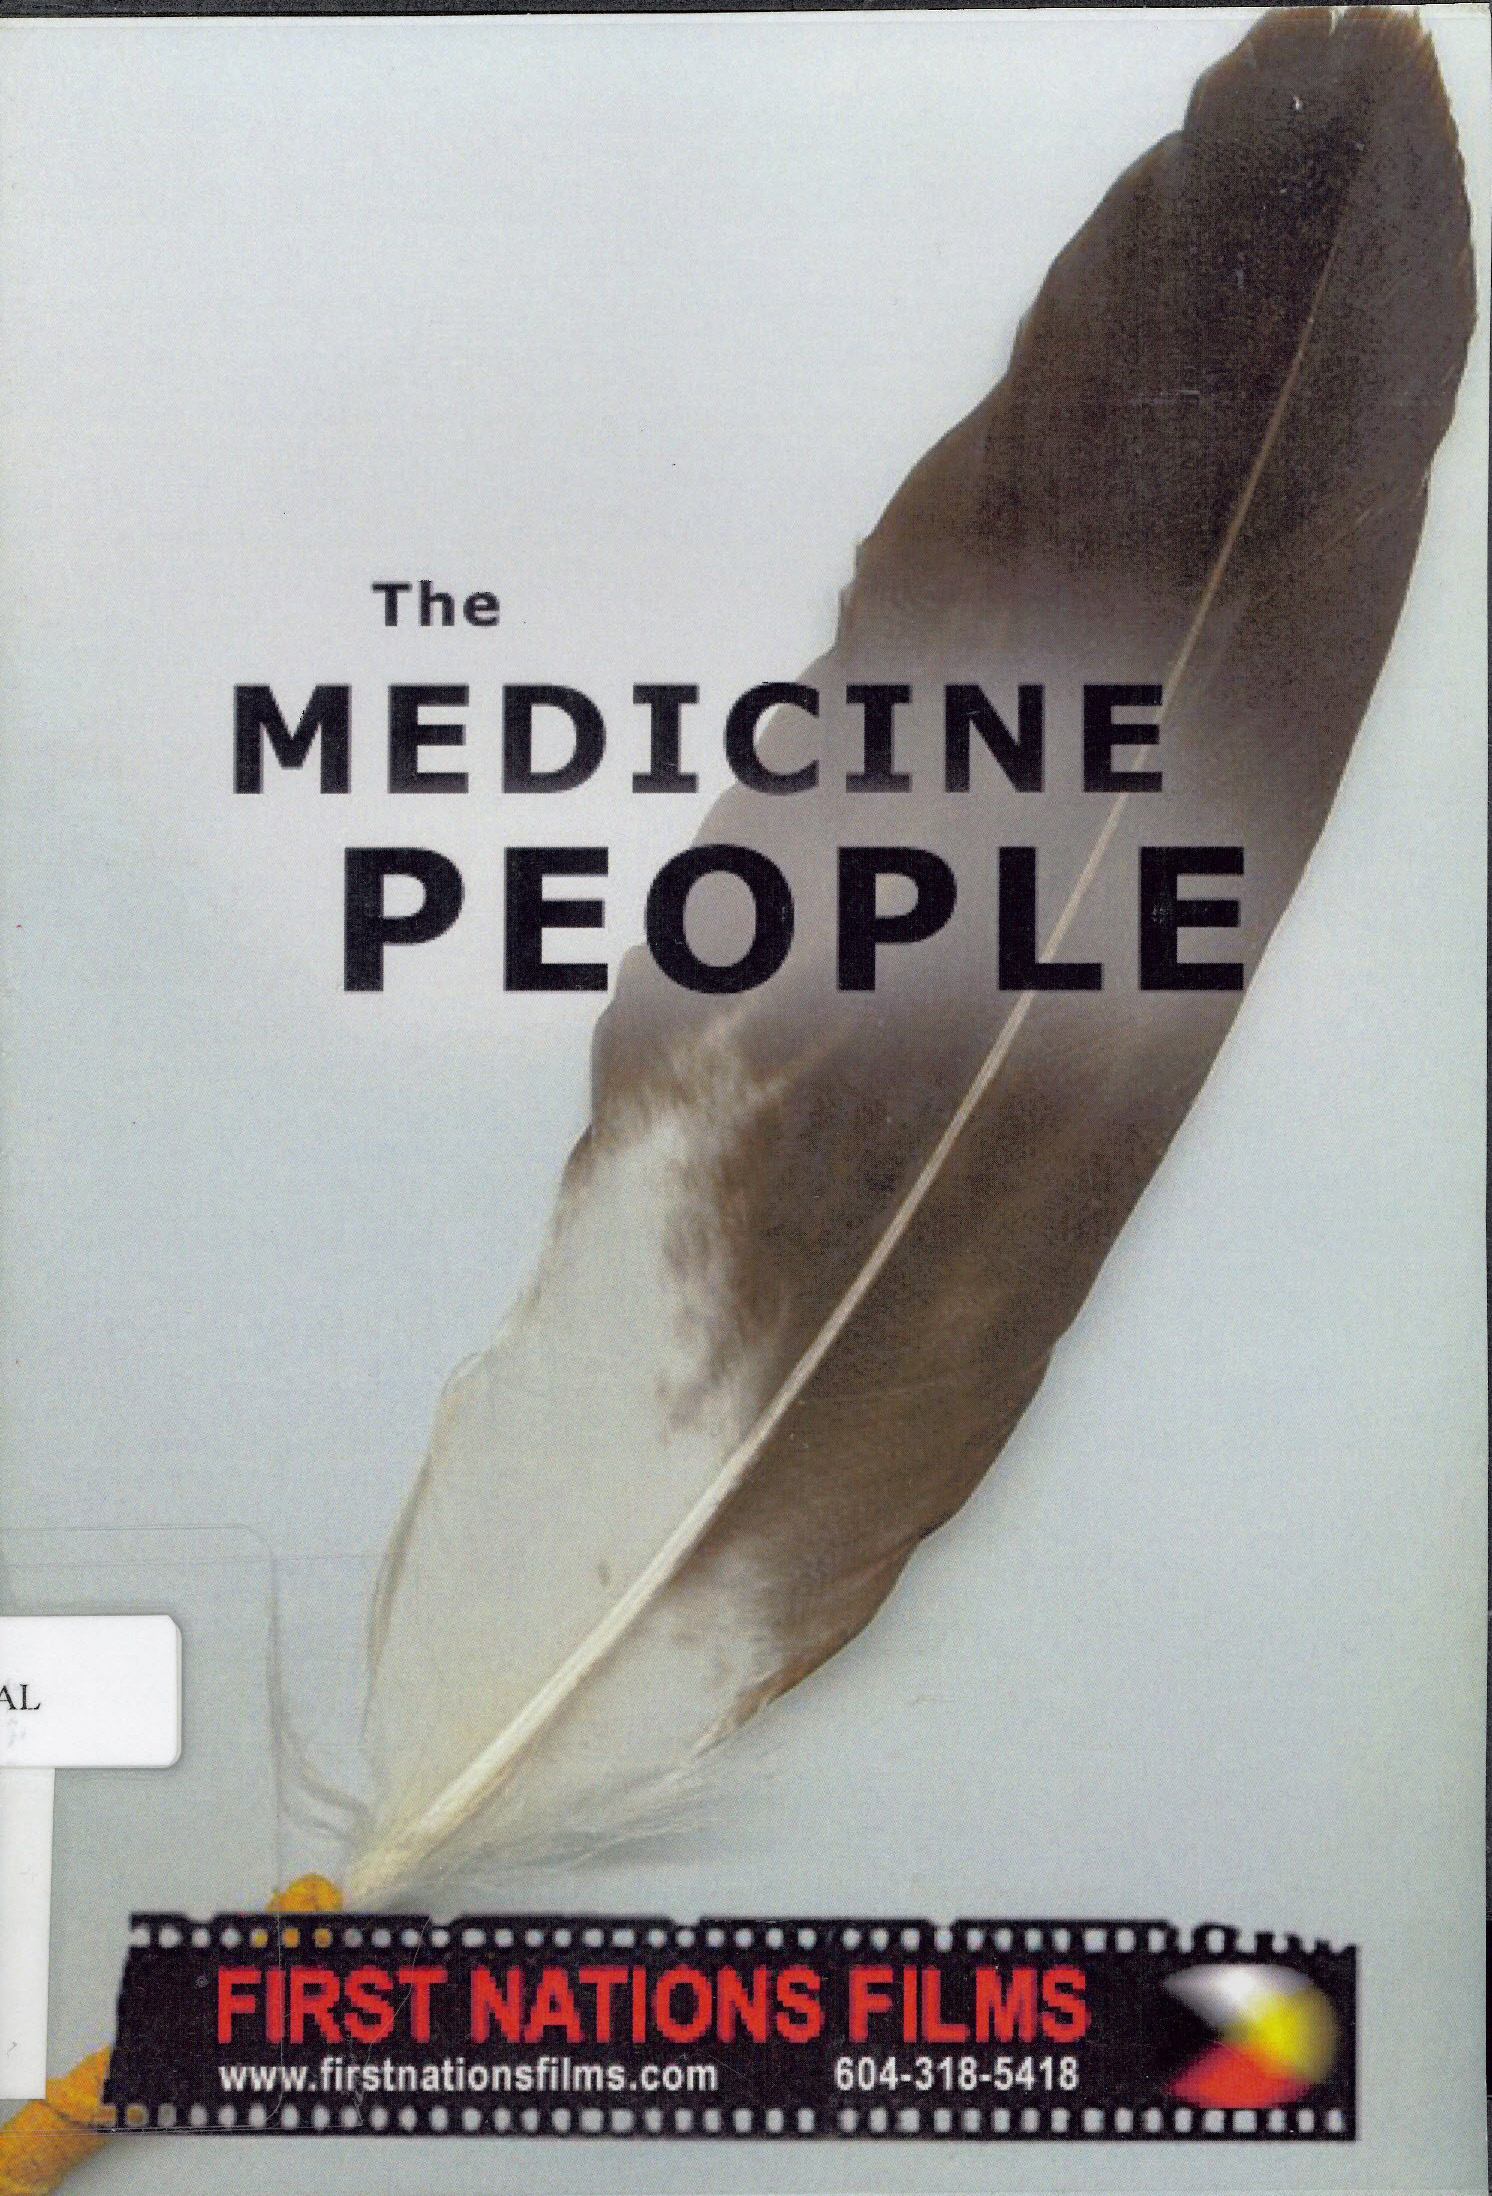 The Medicine people